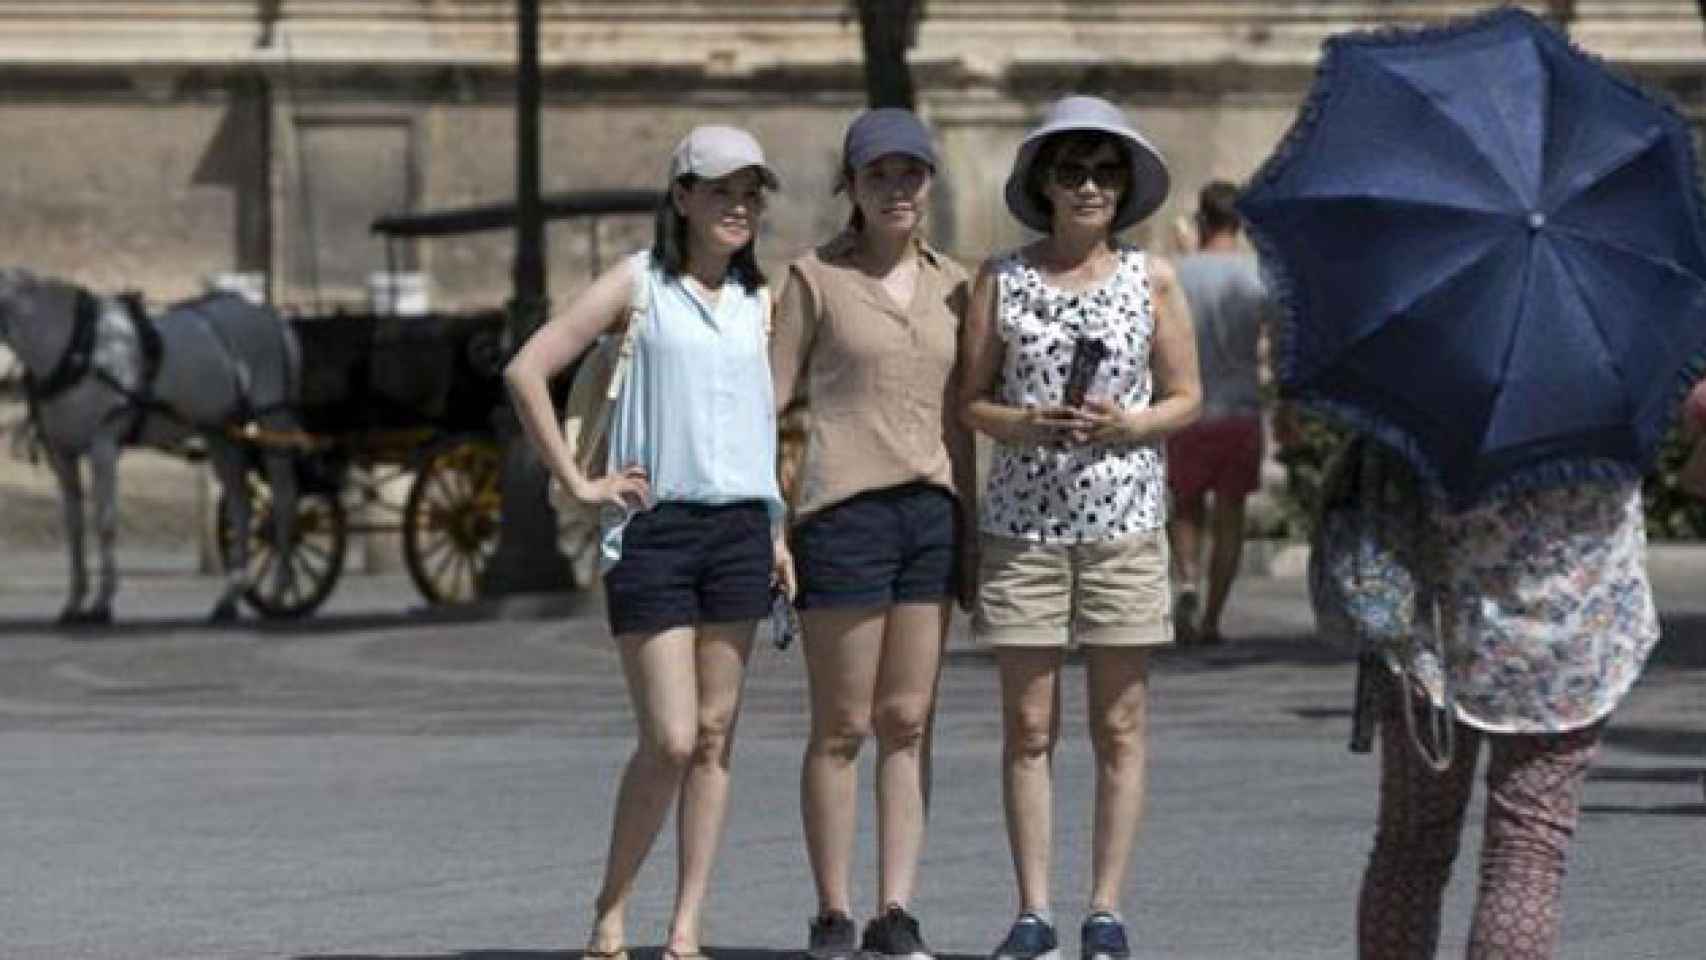 Tres turistas asiáticas posan para una foto en Sevilla / EFE